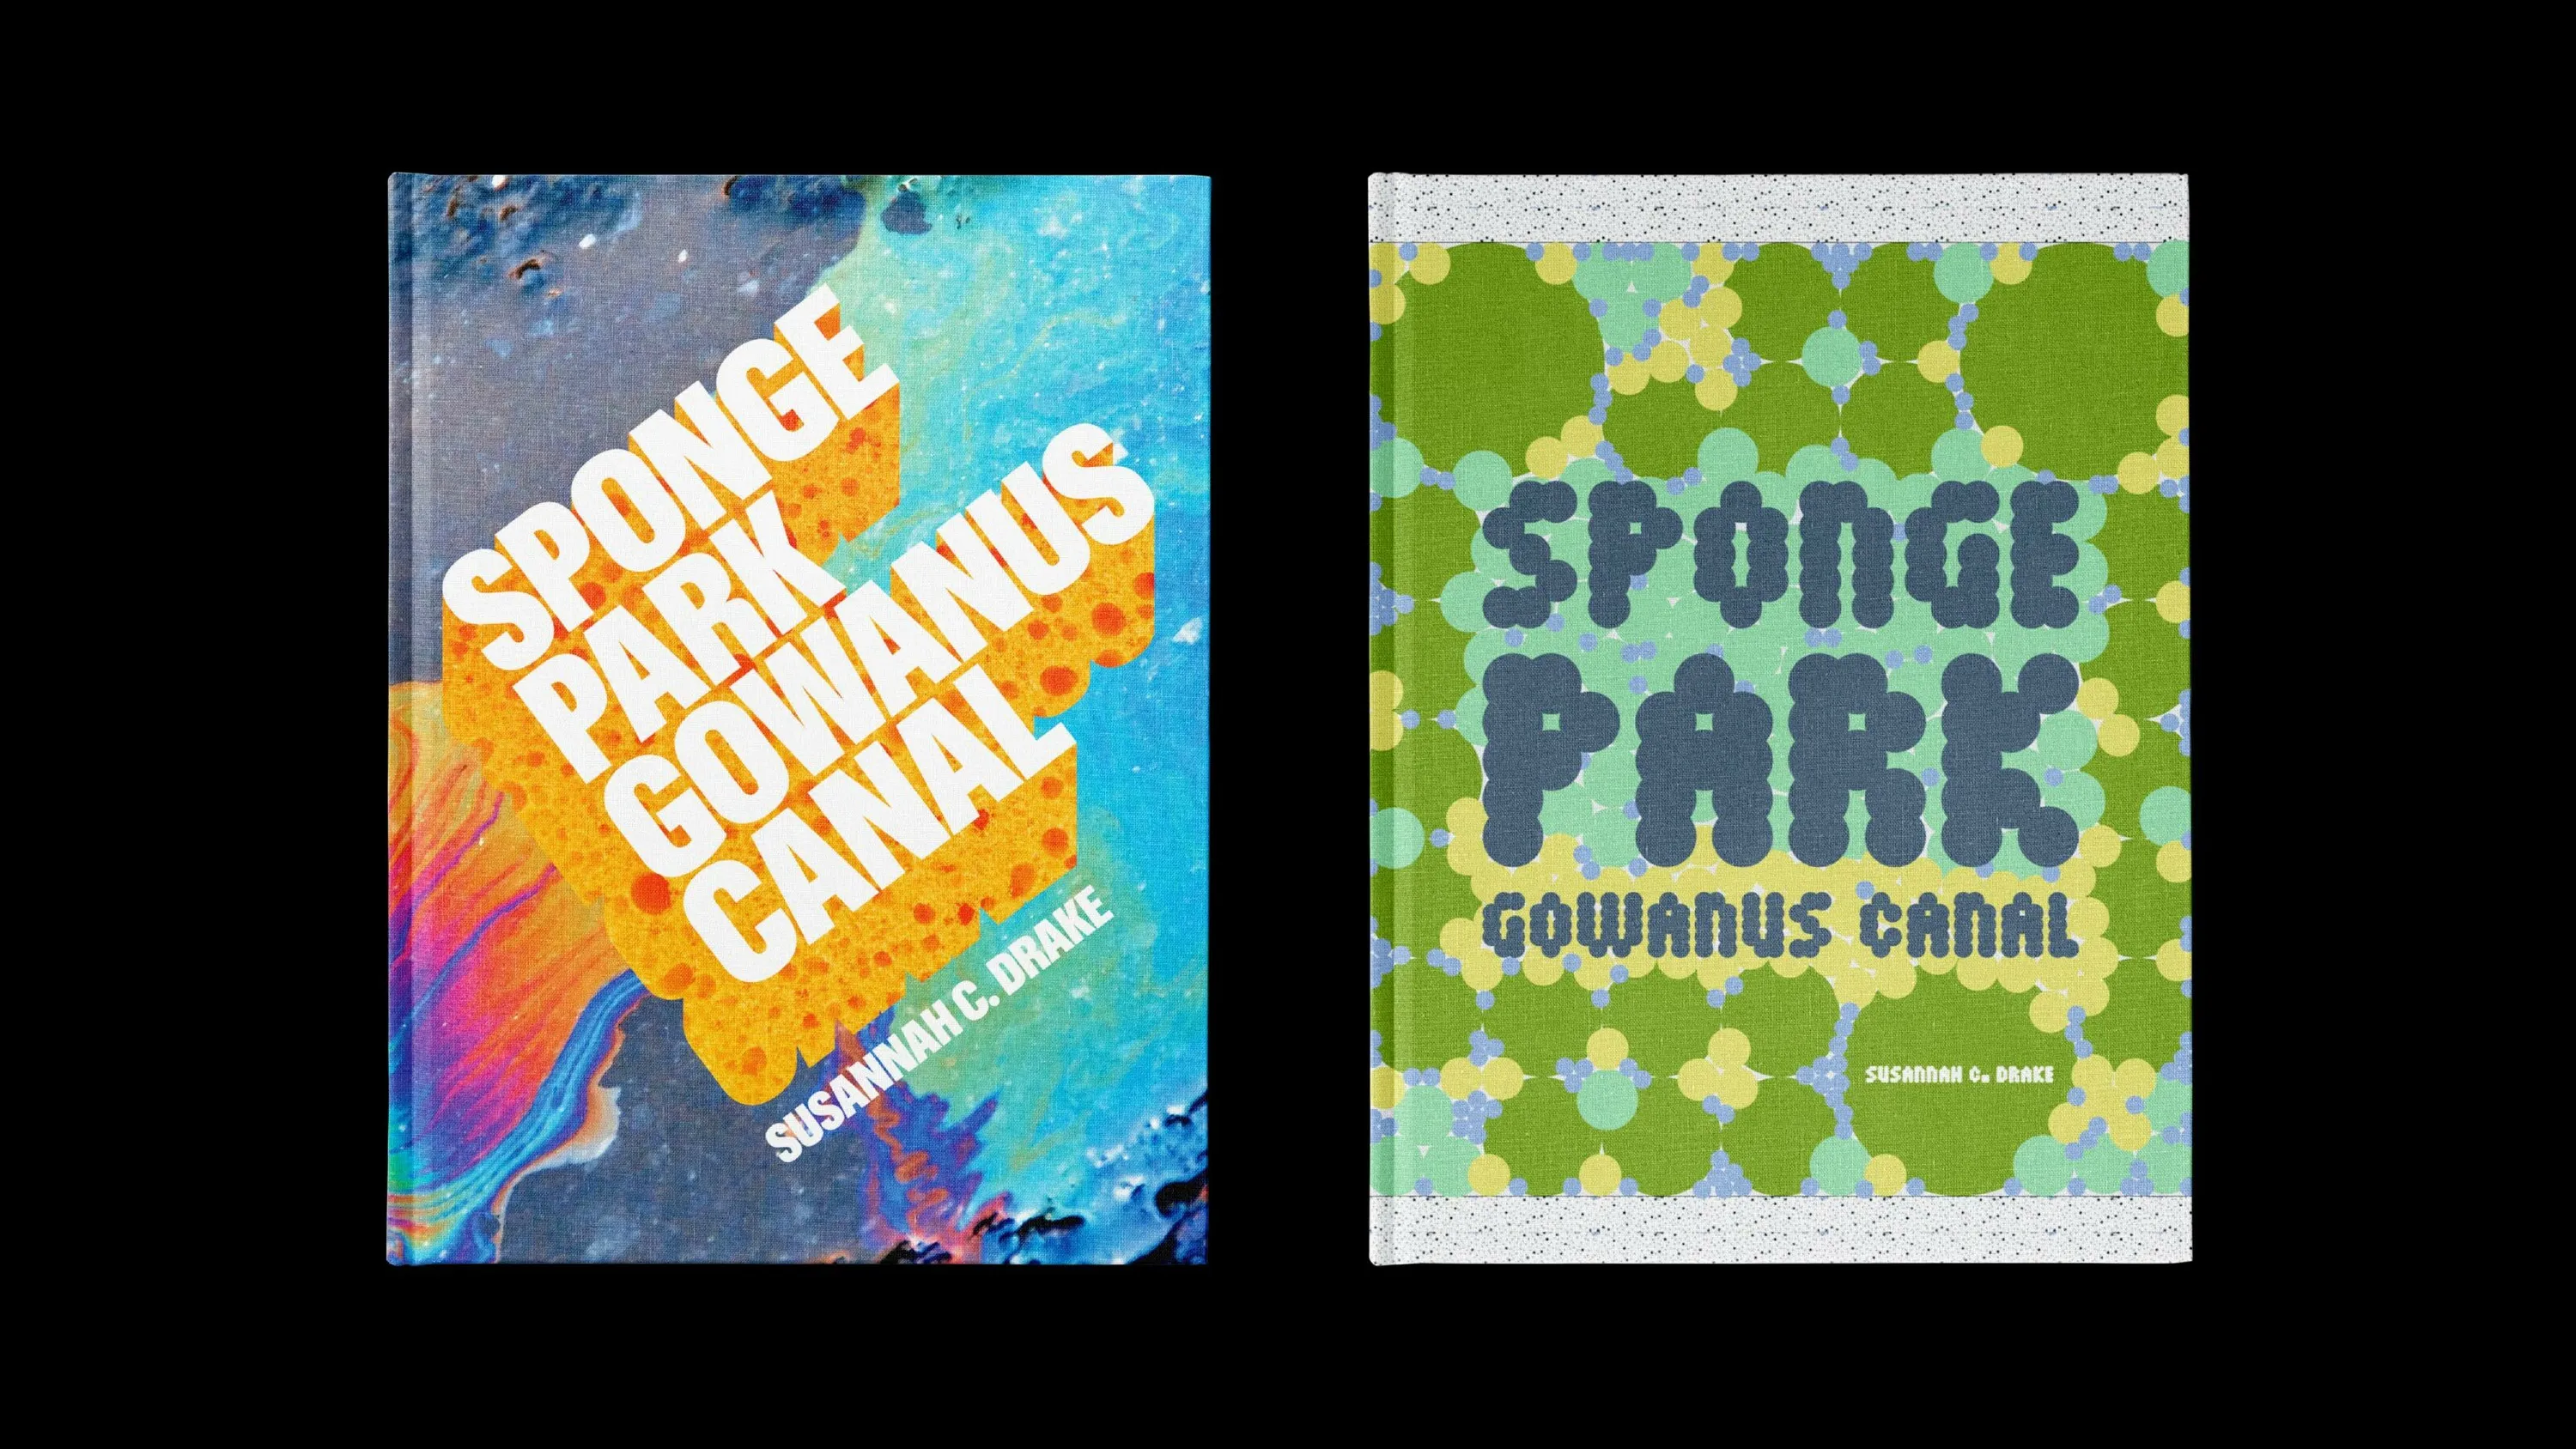 Span Sponge Park Book Cover Design Hero